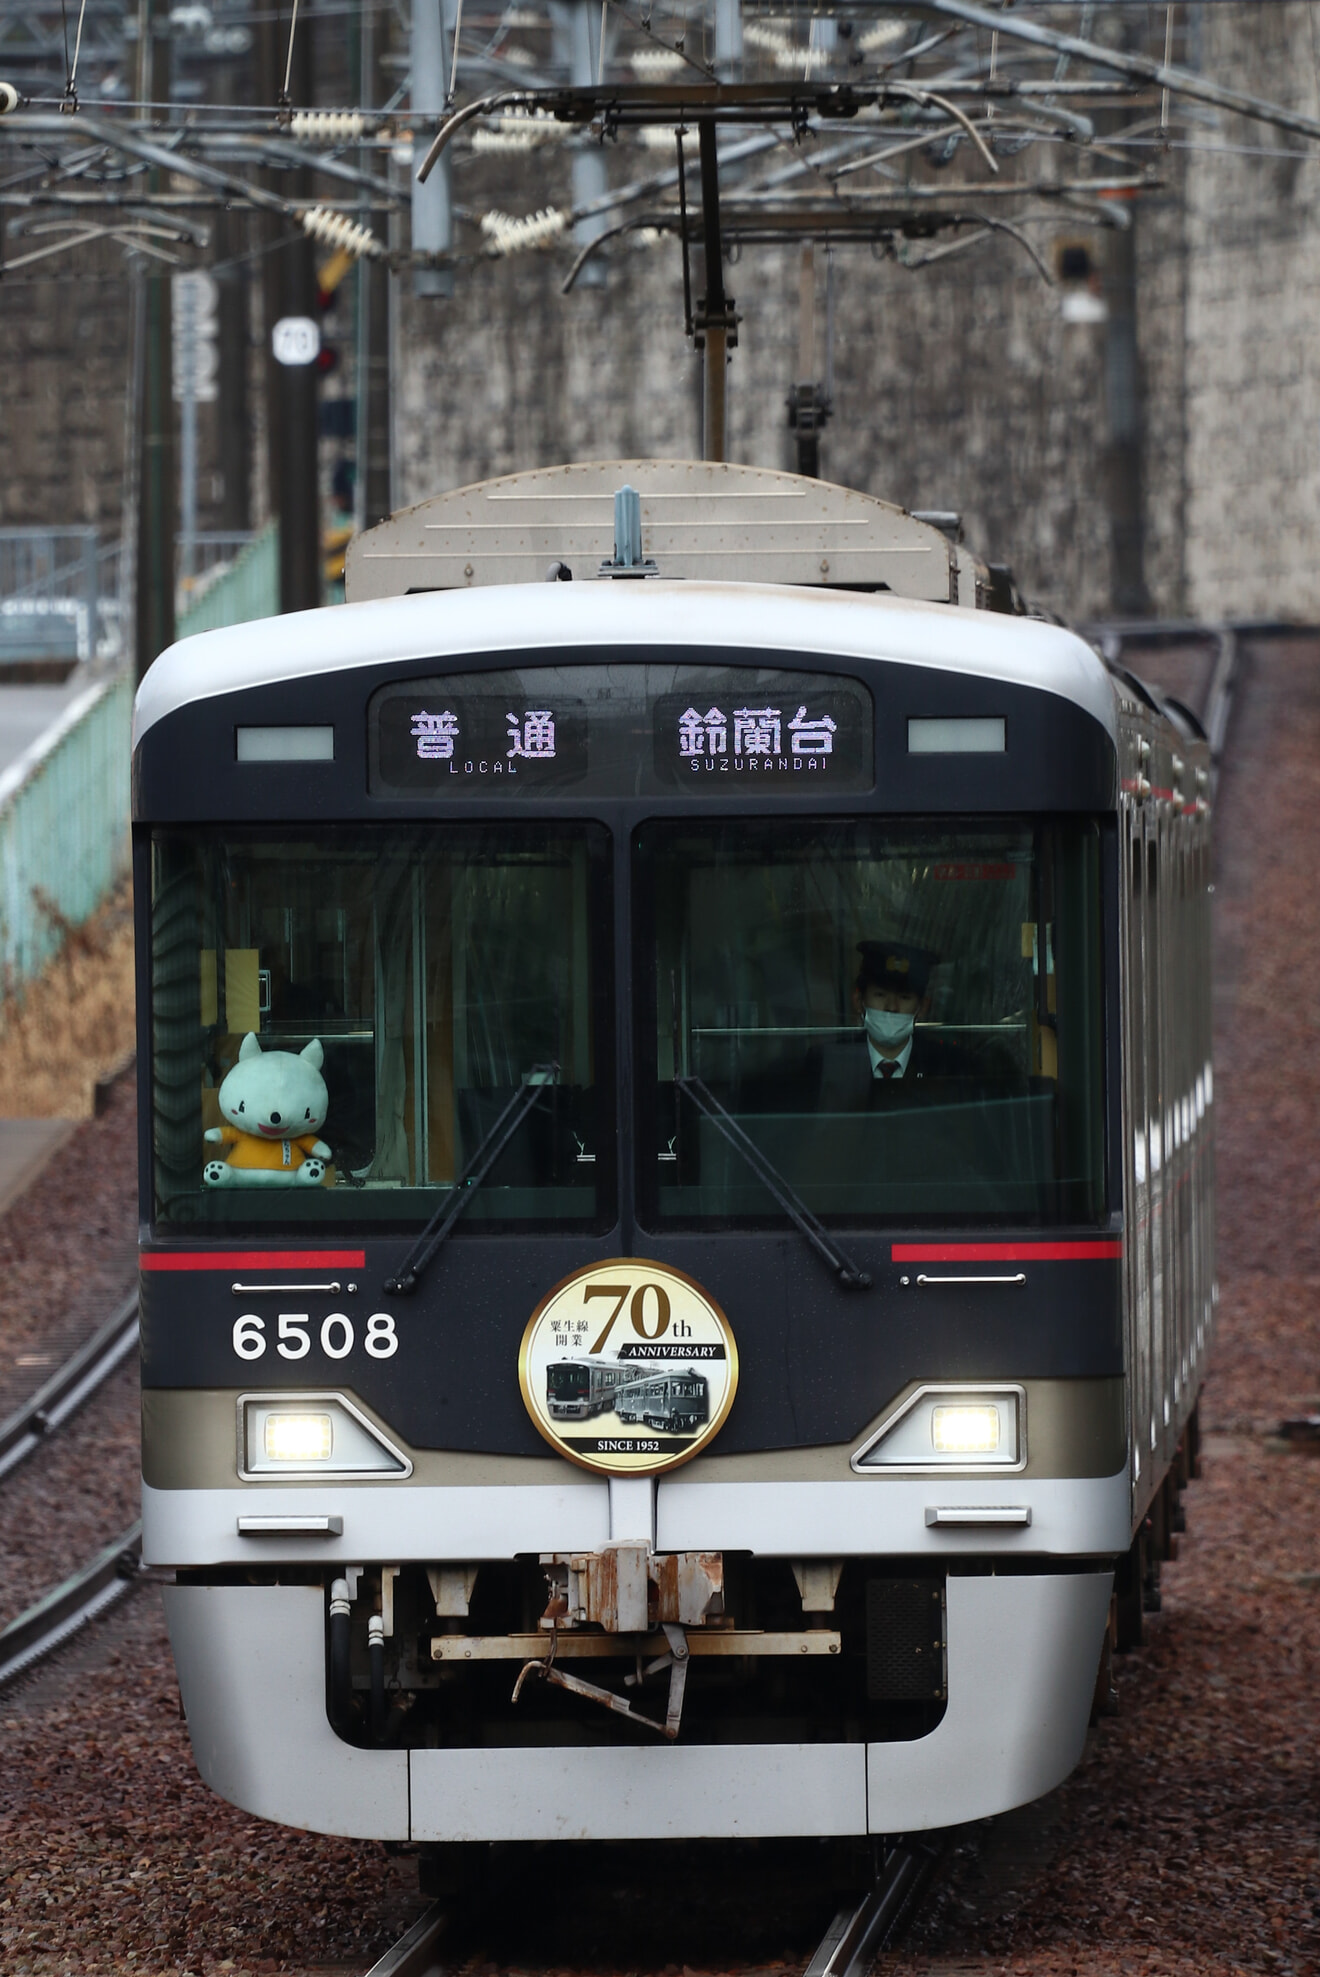 【神鉄】6500系6507Fに粟生線開業70thHMを取り付けて運行中の拡大写真